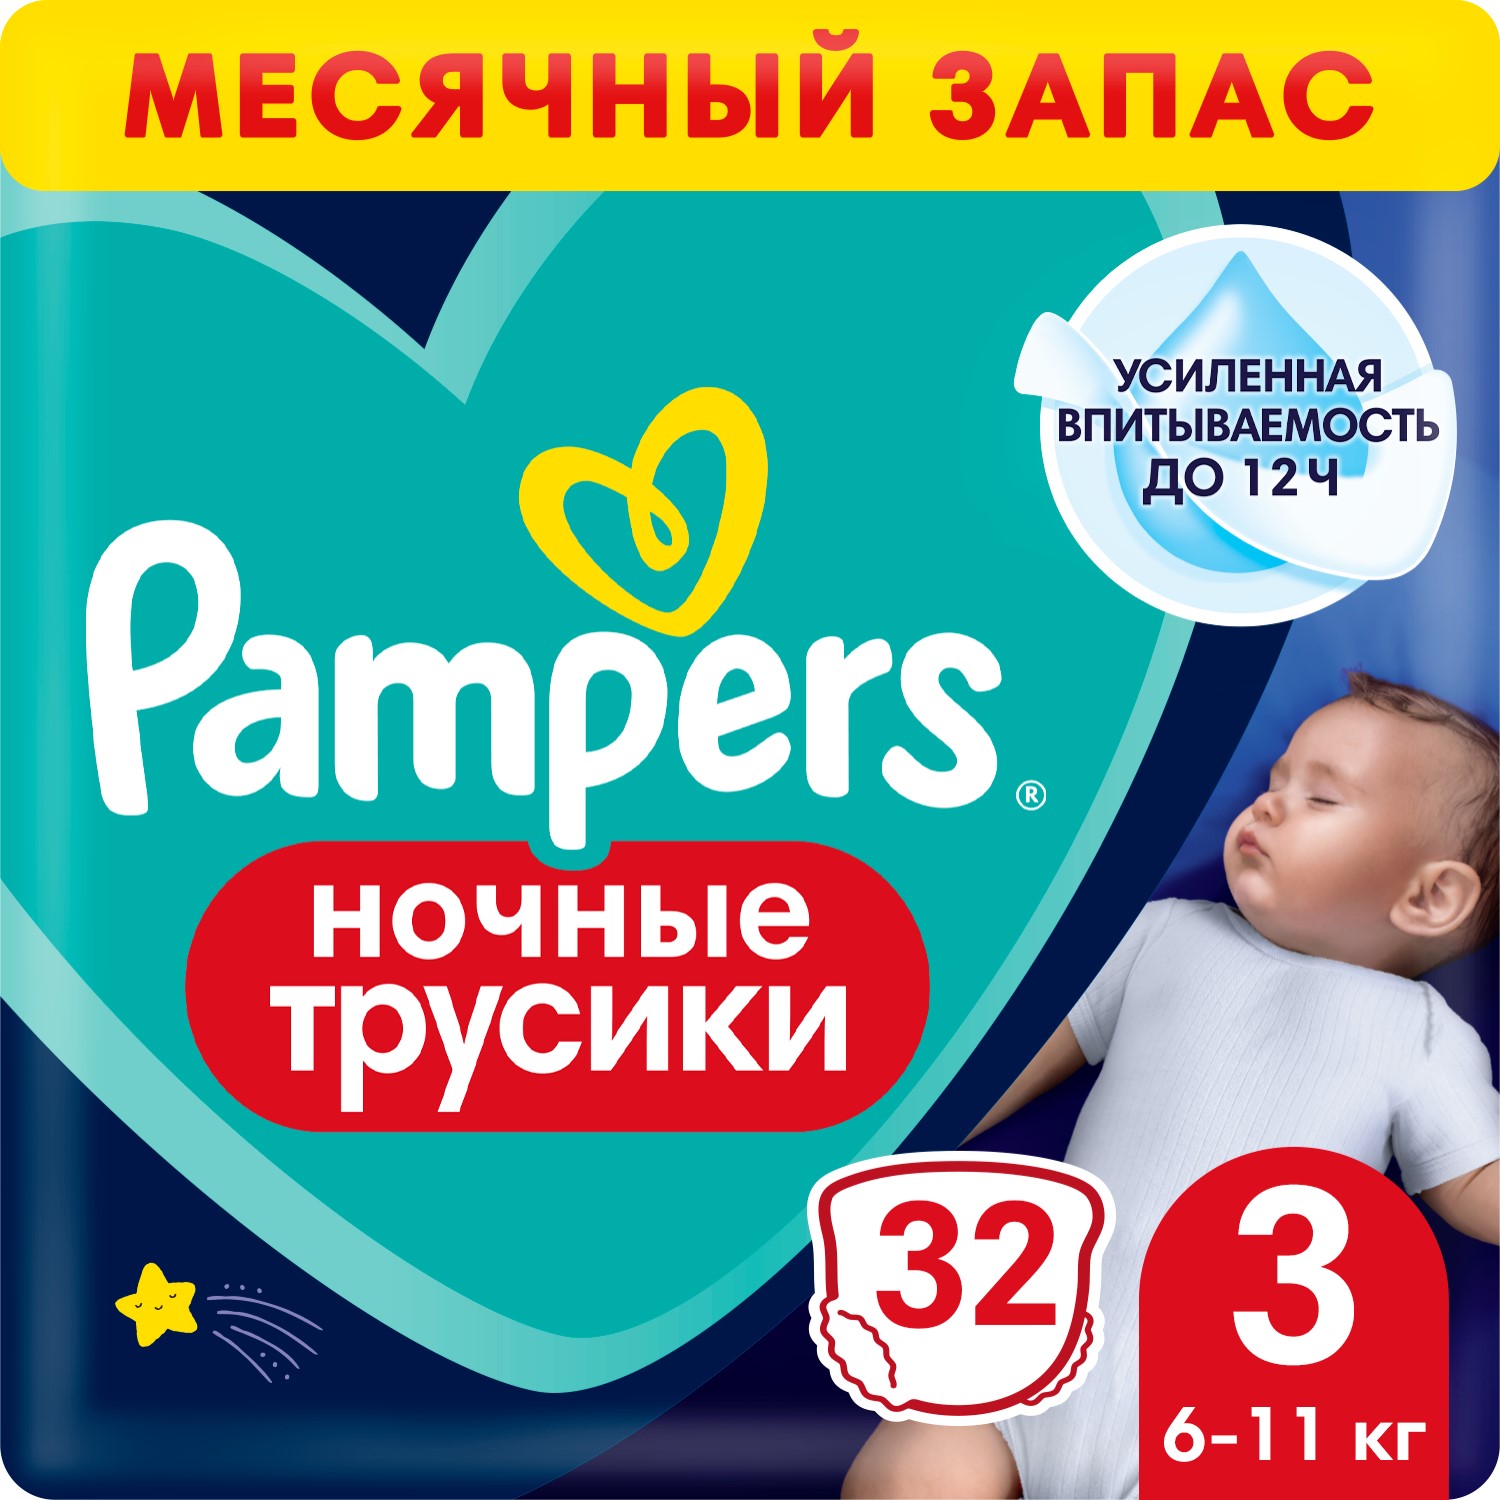 Трусики Pampers Night Pants Размер 3, 32 шт, 6кг - 11кг трусики pampers premium care размер 4 9 15 кг 76 шт